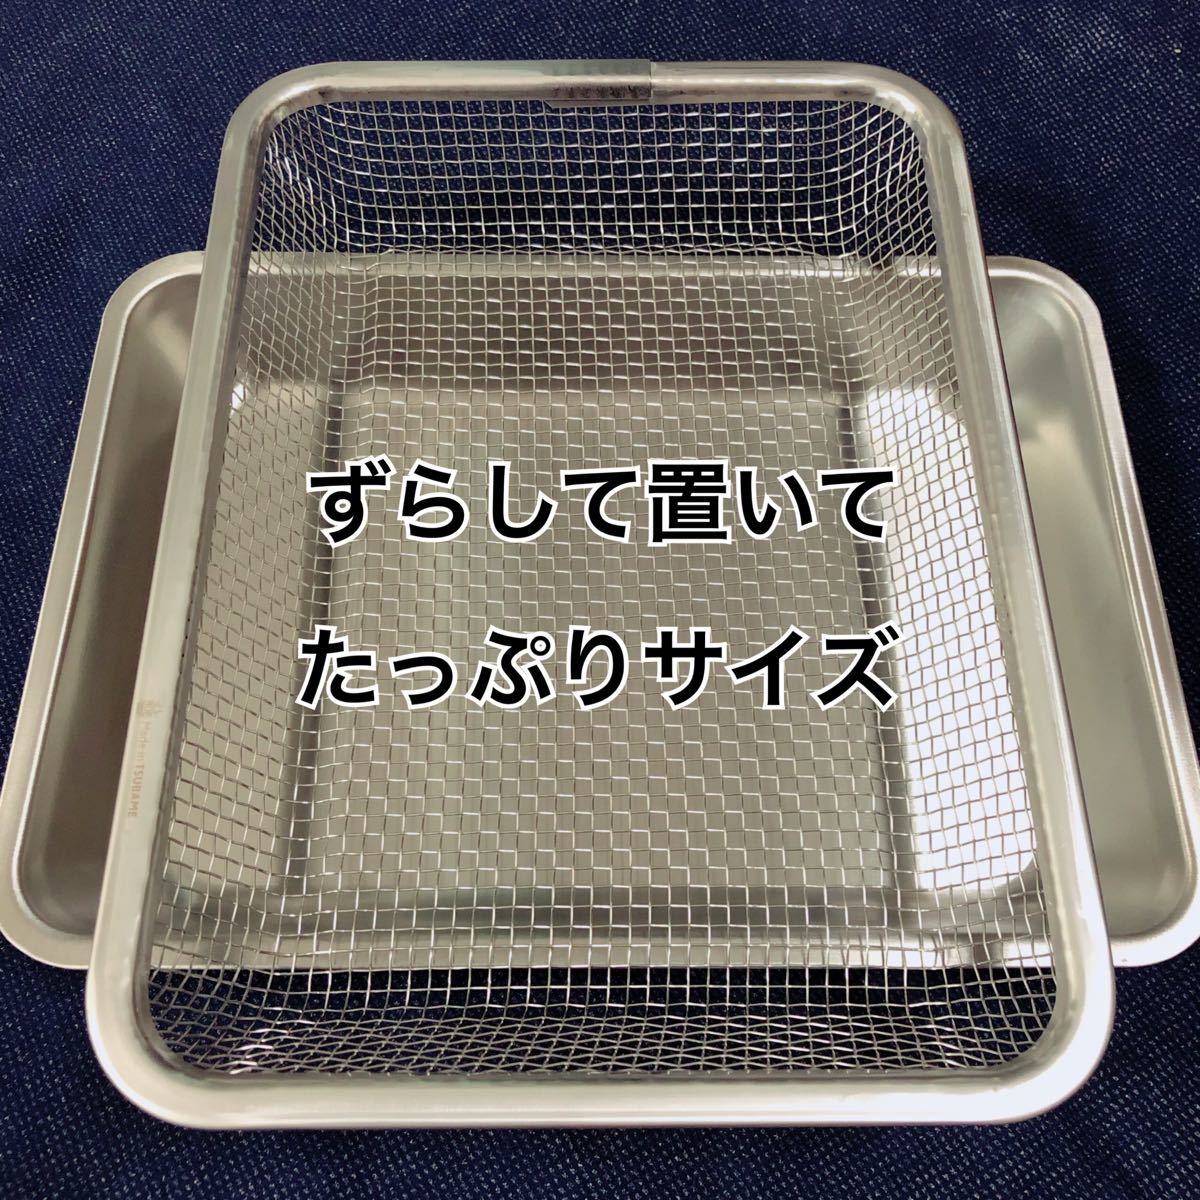 福袋 made in TSUBAME 燕三条 揚げ物セット バット 角ザル